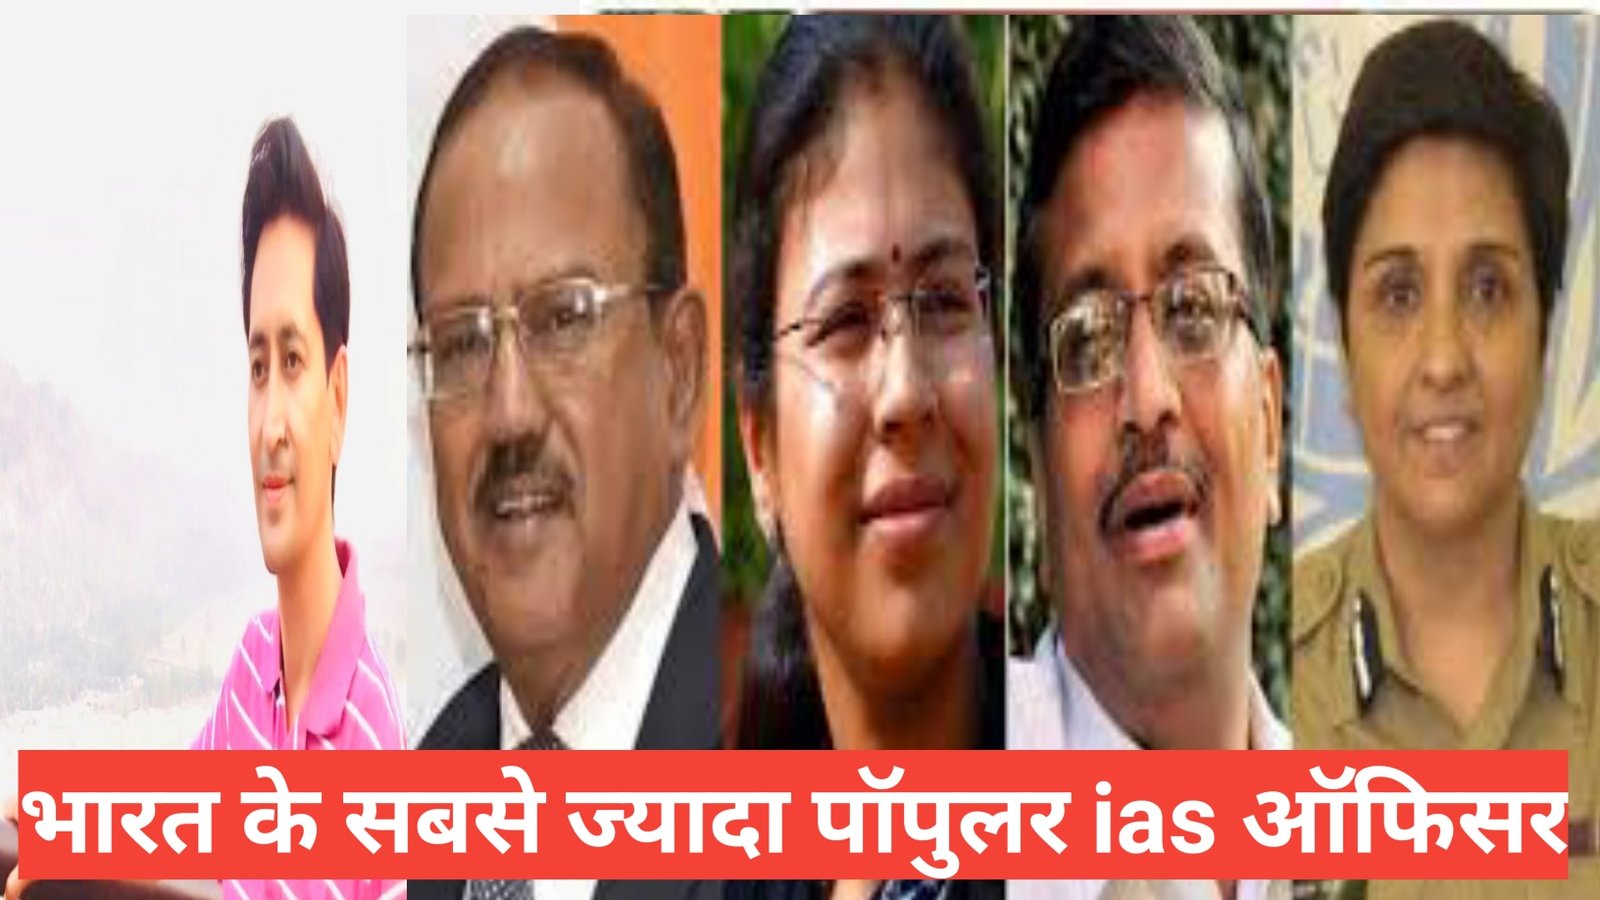 most popular ias officer in hindi / भारत के सबसे जाय्दा पॉपुलर आईएएस ऑफिसर , दीपक रावत,बी चंद्रकला,IAS Smita Sabharwal,दुर्गा शक्ति ,Pame